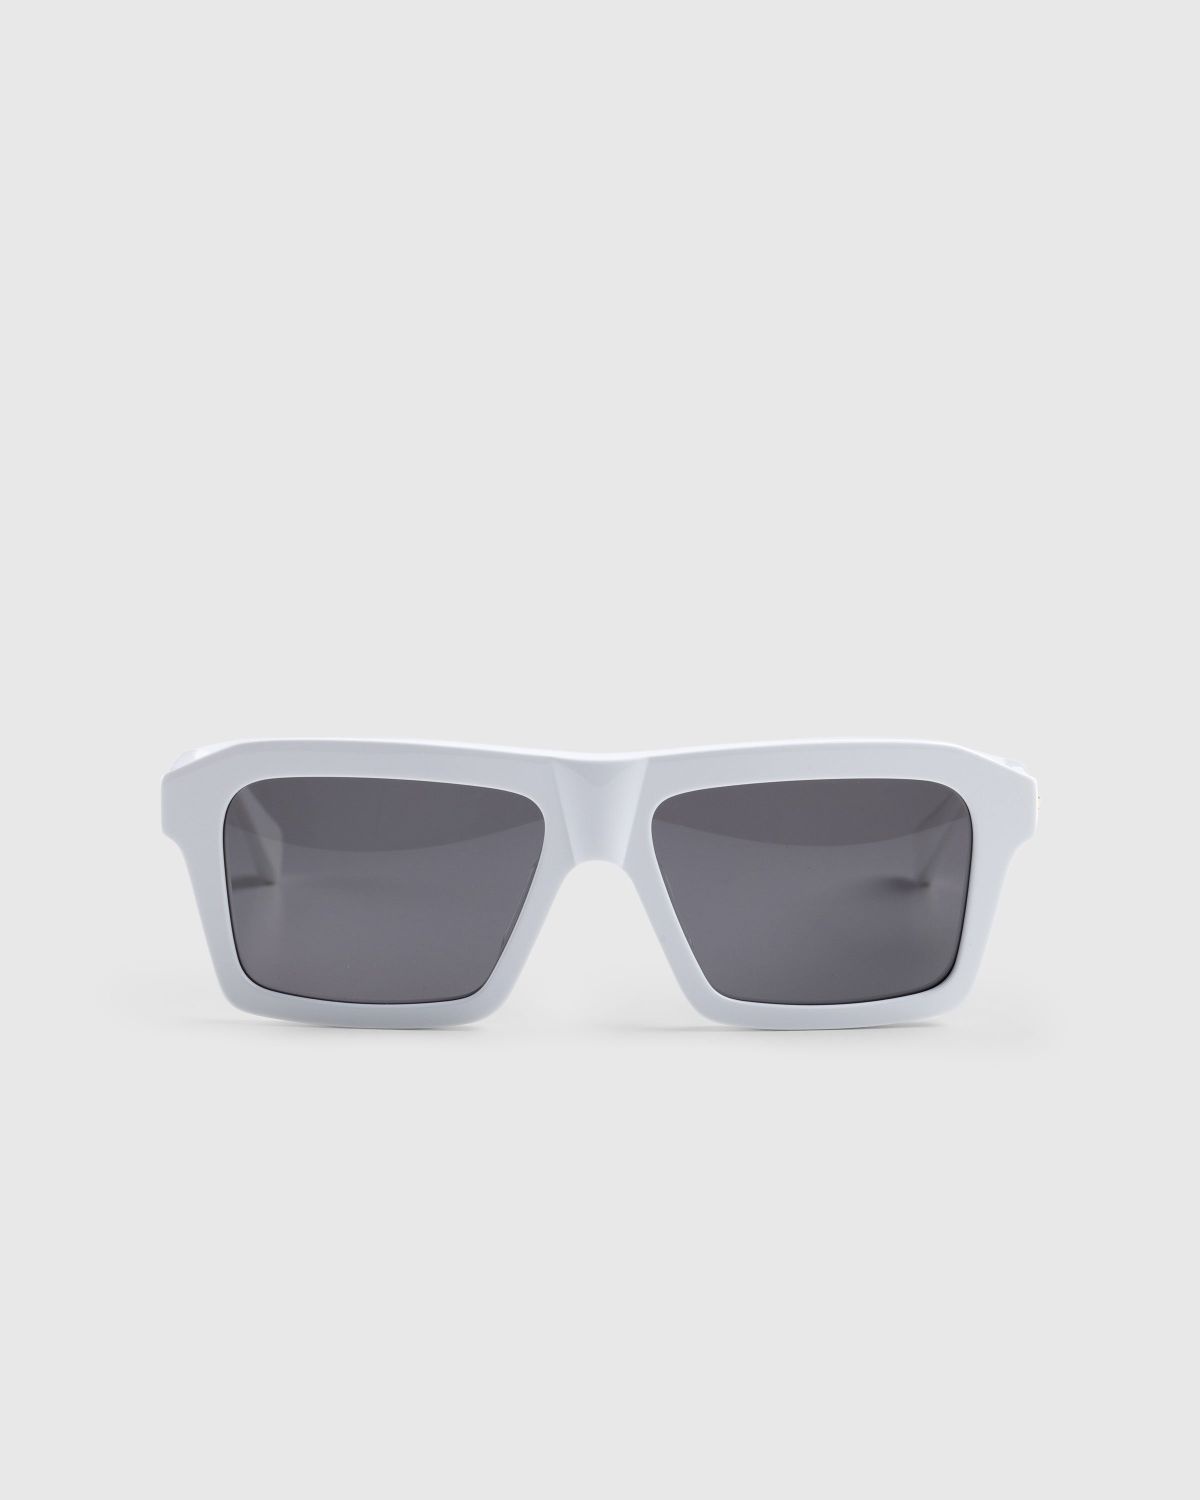 Bottega Veneta – Classic Square Sunglasses White/White/Grey - 1